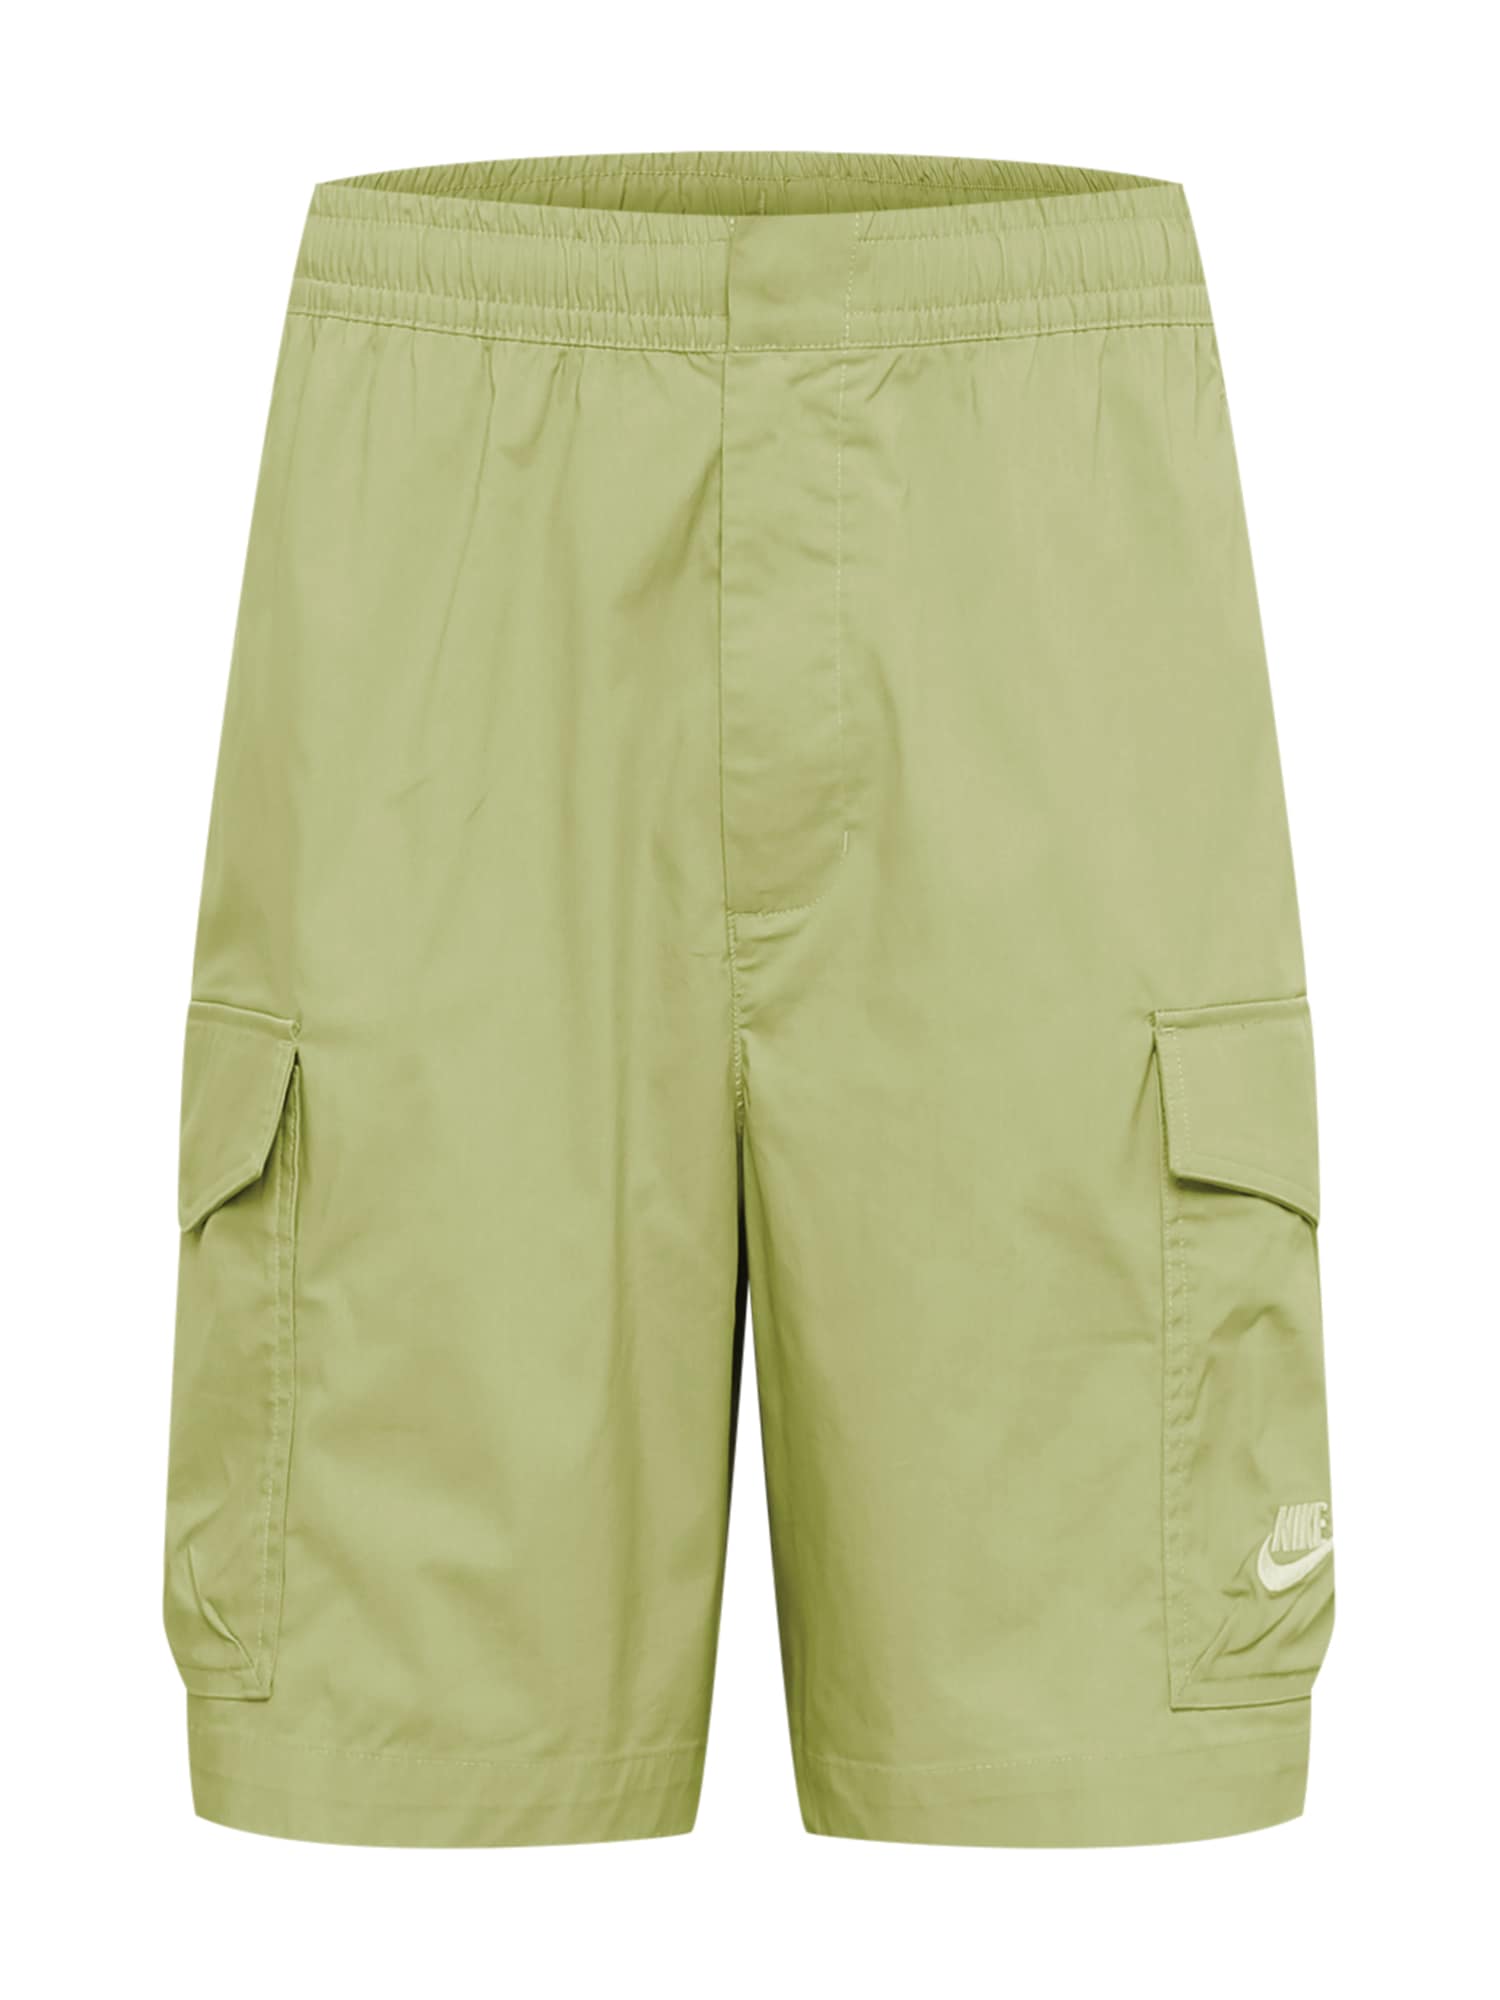 Nike Sportswear Pantaloni cu buzunare  verde măr / alb natural